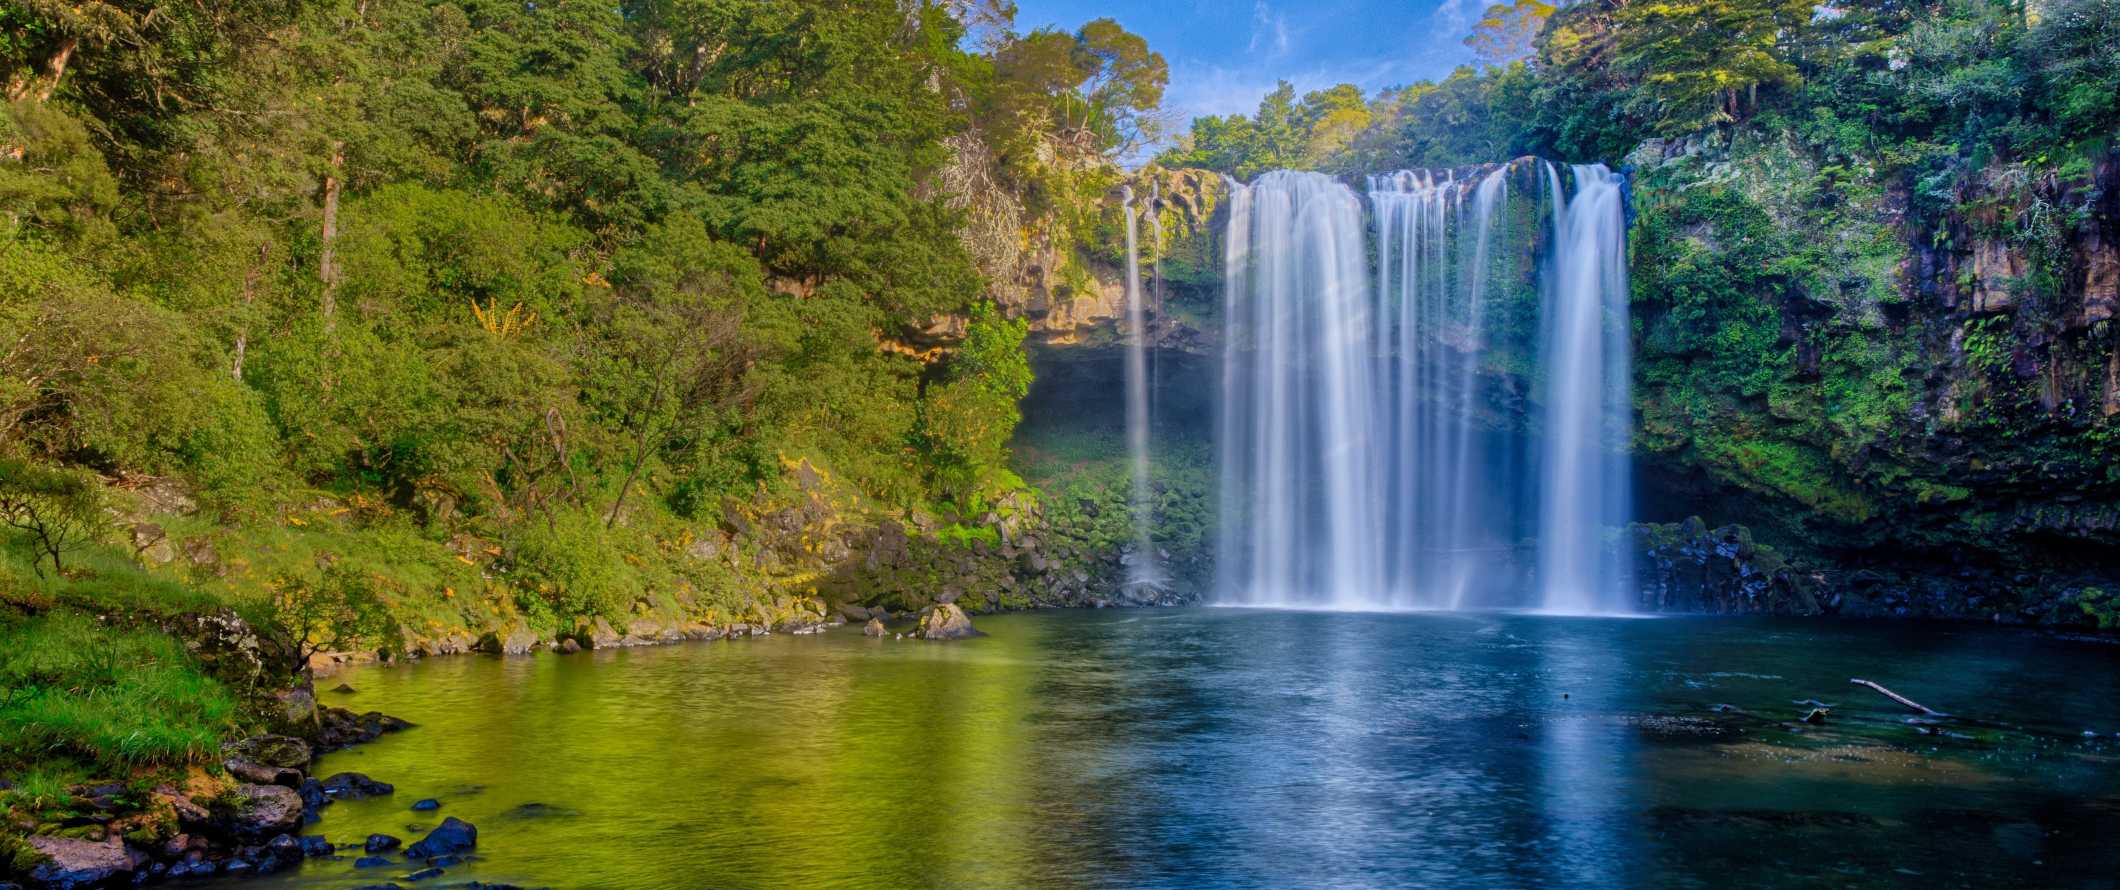 Rainbow da cachoeira - uma cachoeira pitoresca que leva a uma grande piscina na floresta na baía das ilhas, Nova Zelândia